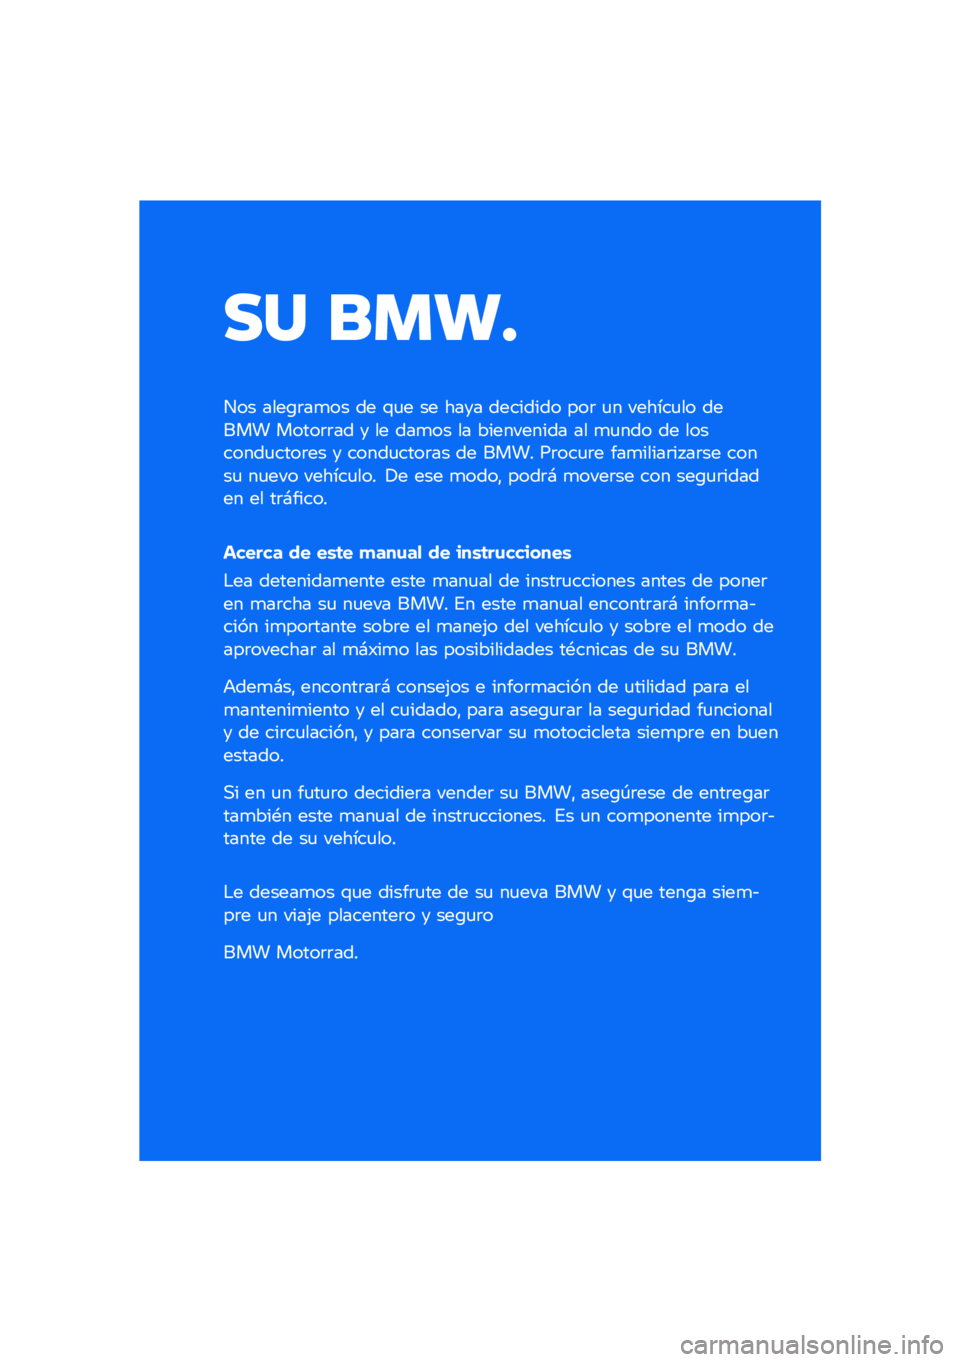 BMW MOTORRAD F 900 R 2021  Manual de instrucciones (in Spanish) �� ����
��� ����\b�	��
�� �� �\f�
� �� ���� �������� ���	 �
� ������
�� ����� �����	�	�� � �� ���
�� �� ���������� �� �
�
��